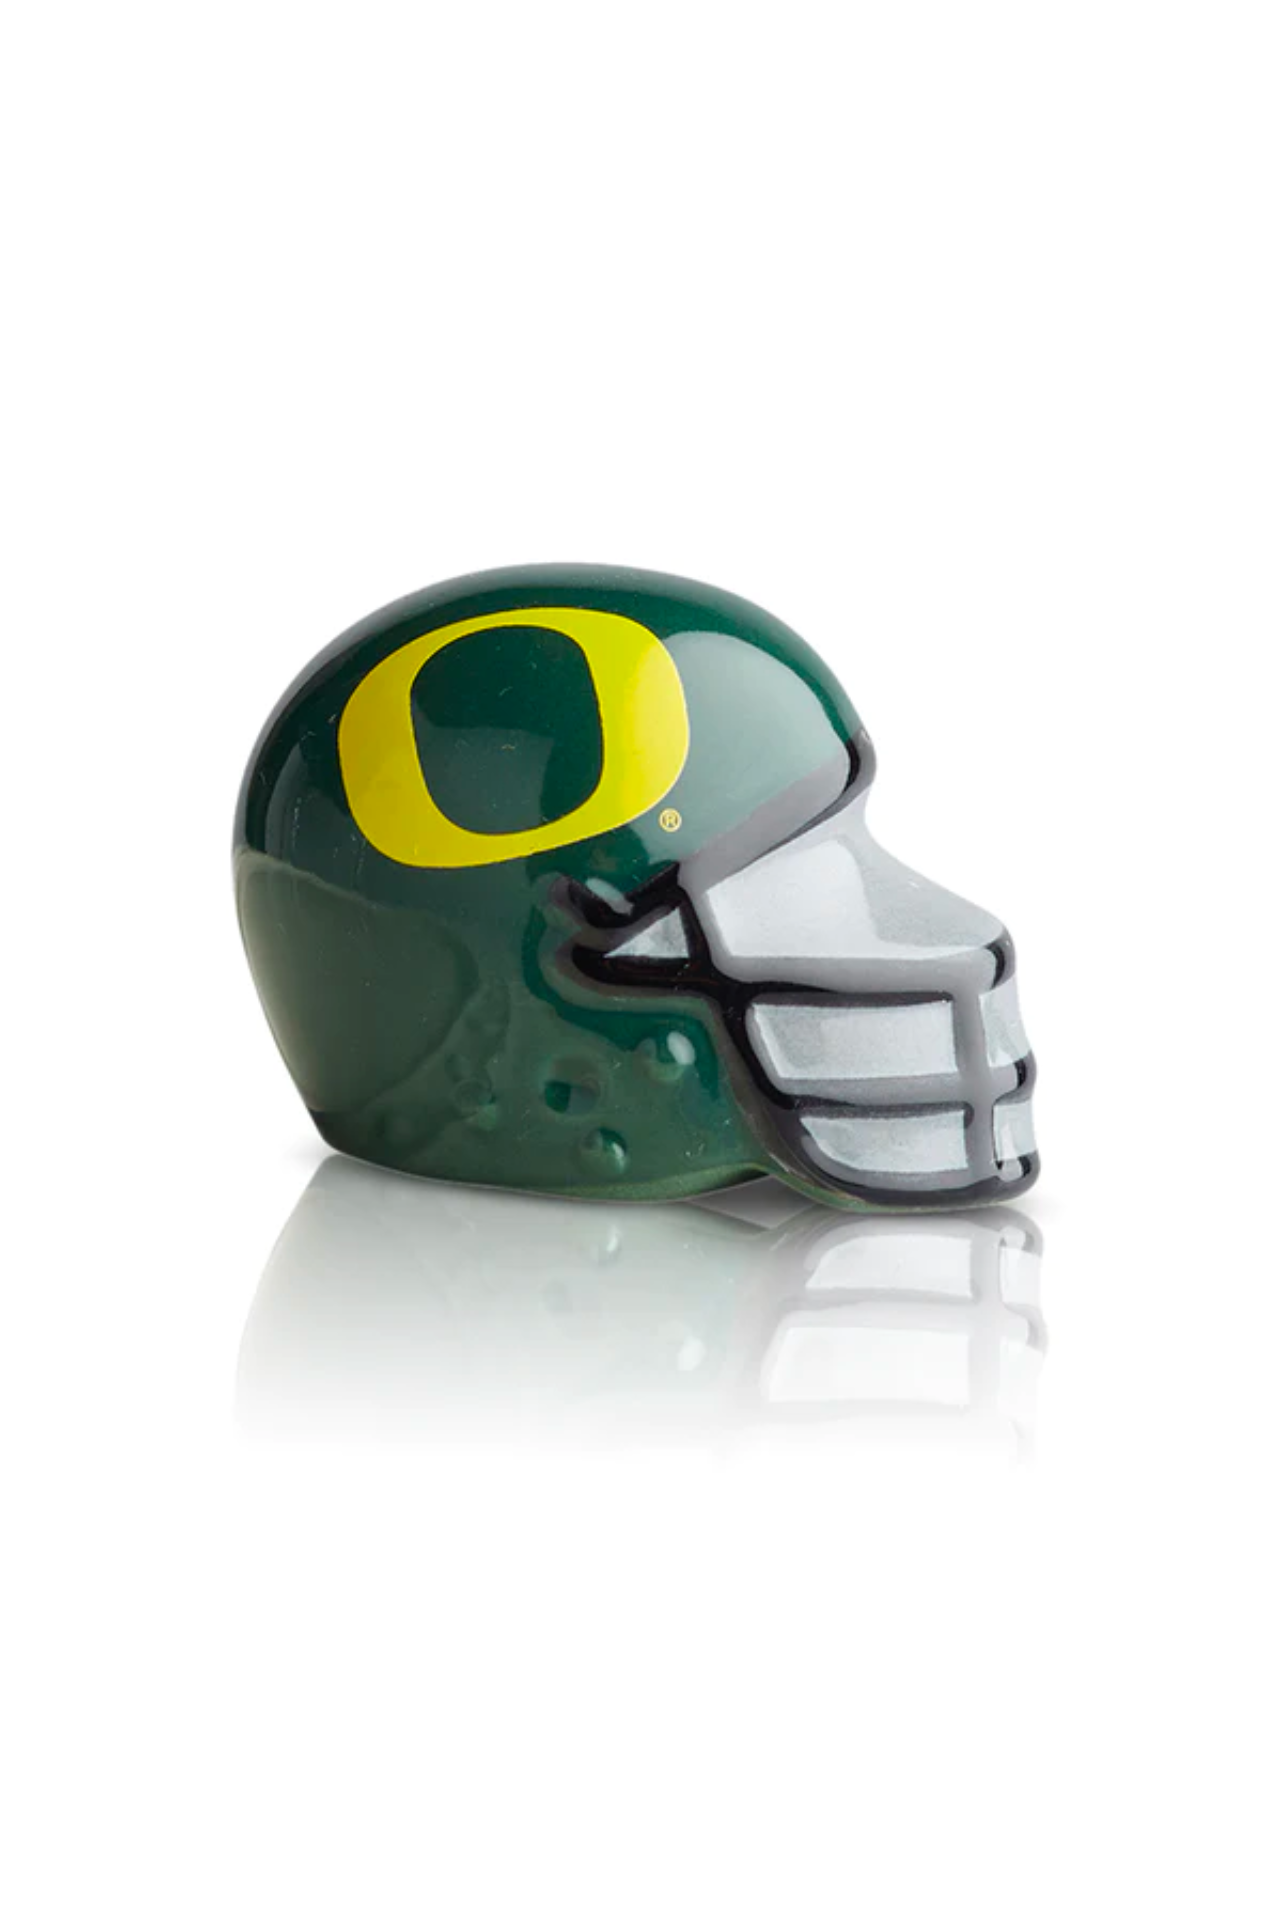 U Oregon Helmet (A307)